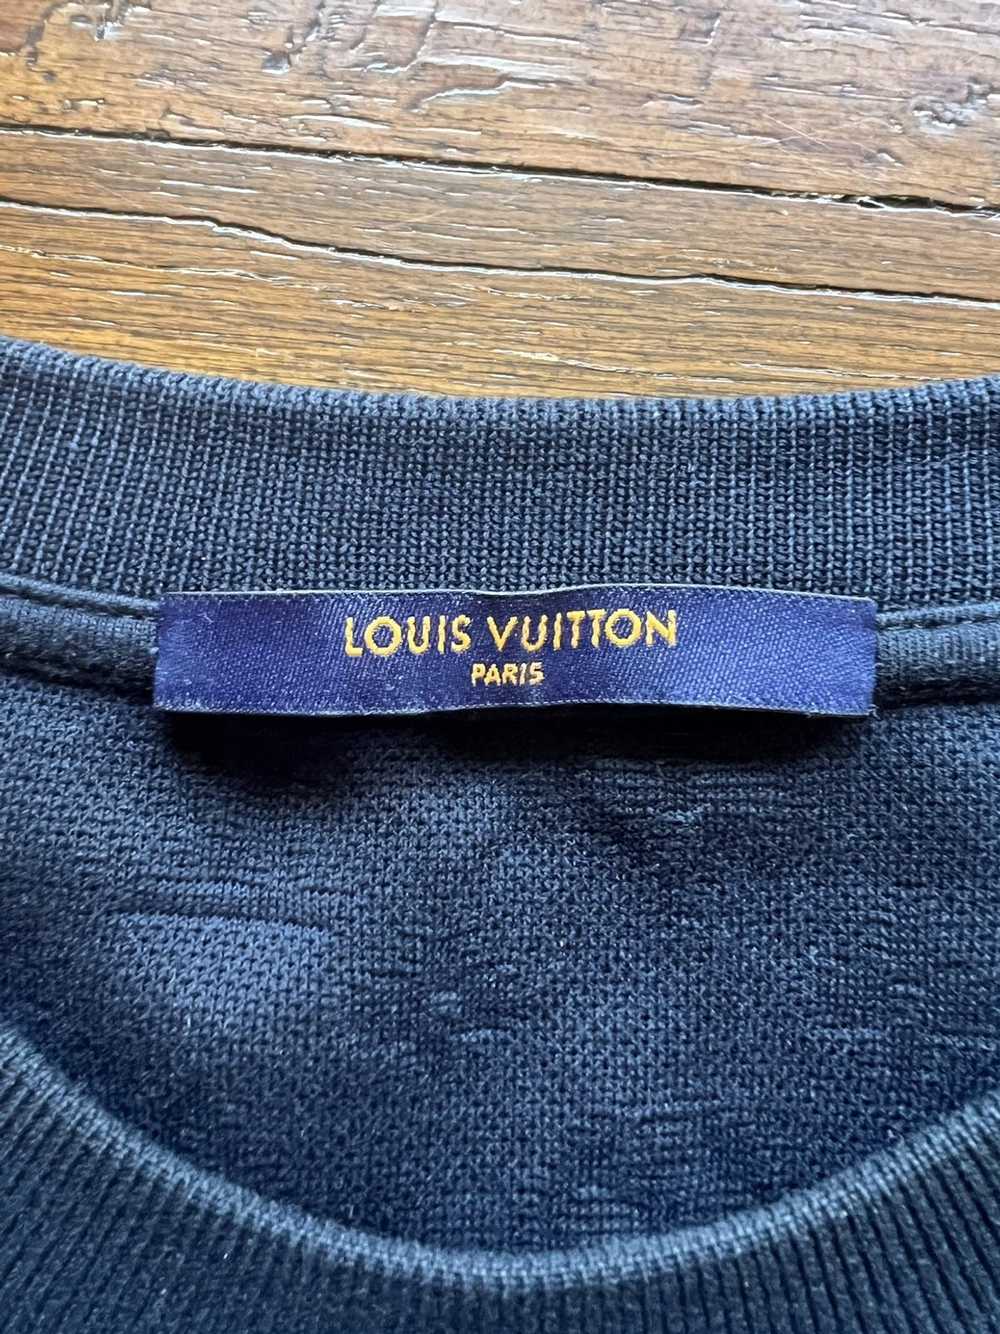 Cinturón Louis Vuitton 3d Azul Reversible